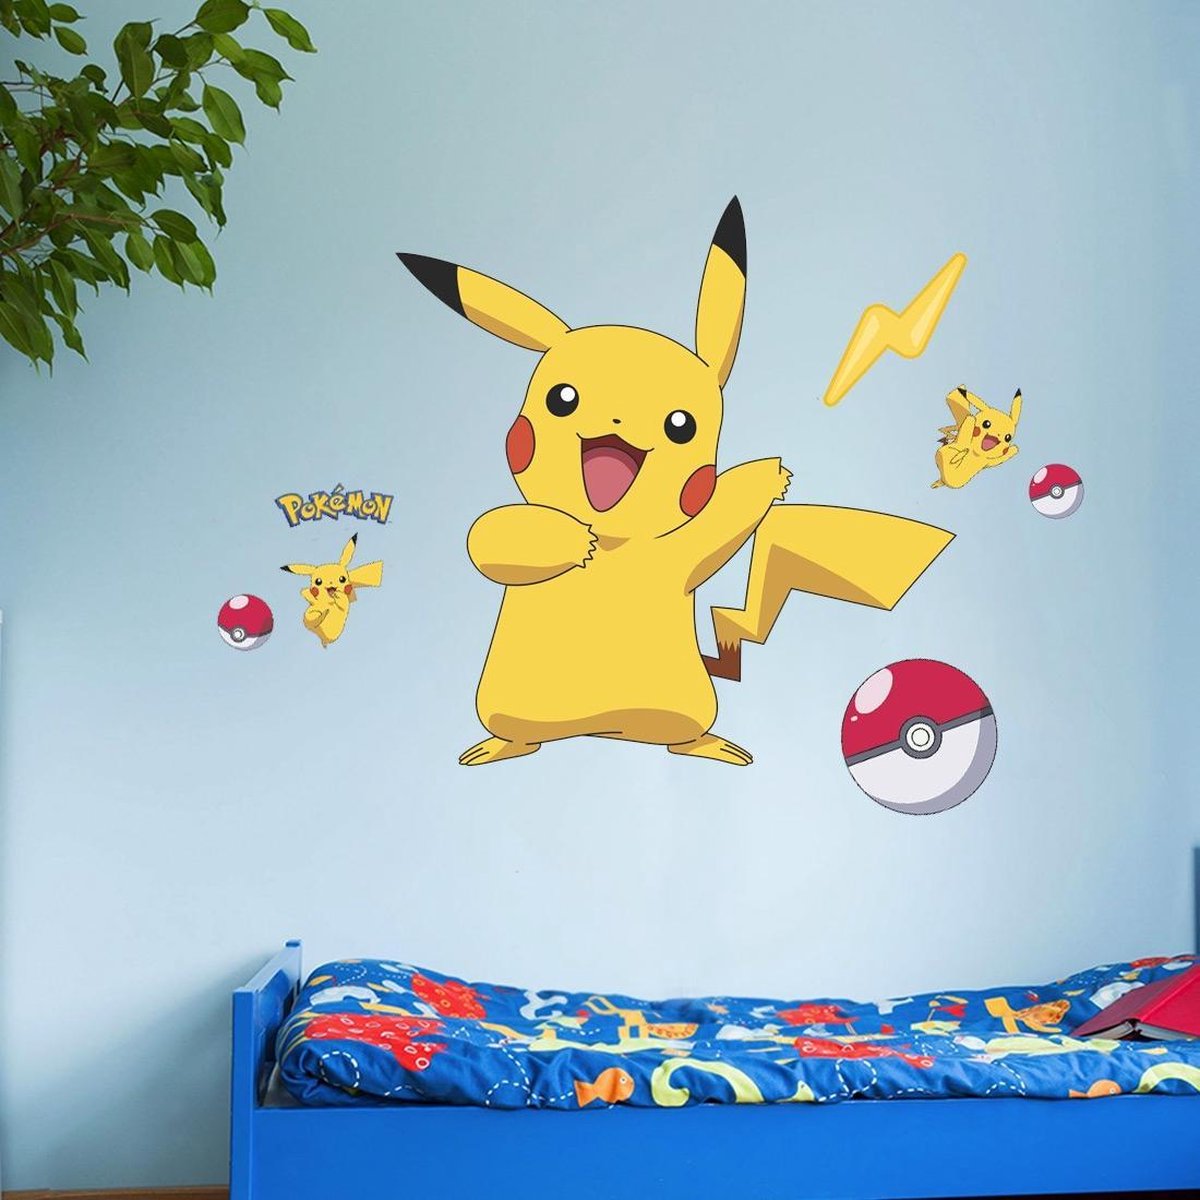 Autocollants muraux Pokemon Pikachu pour chambre d'enfant, papier